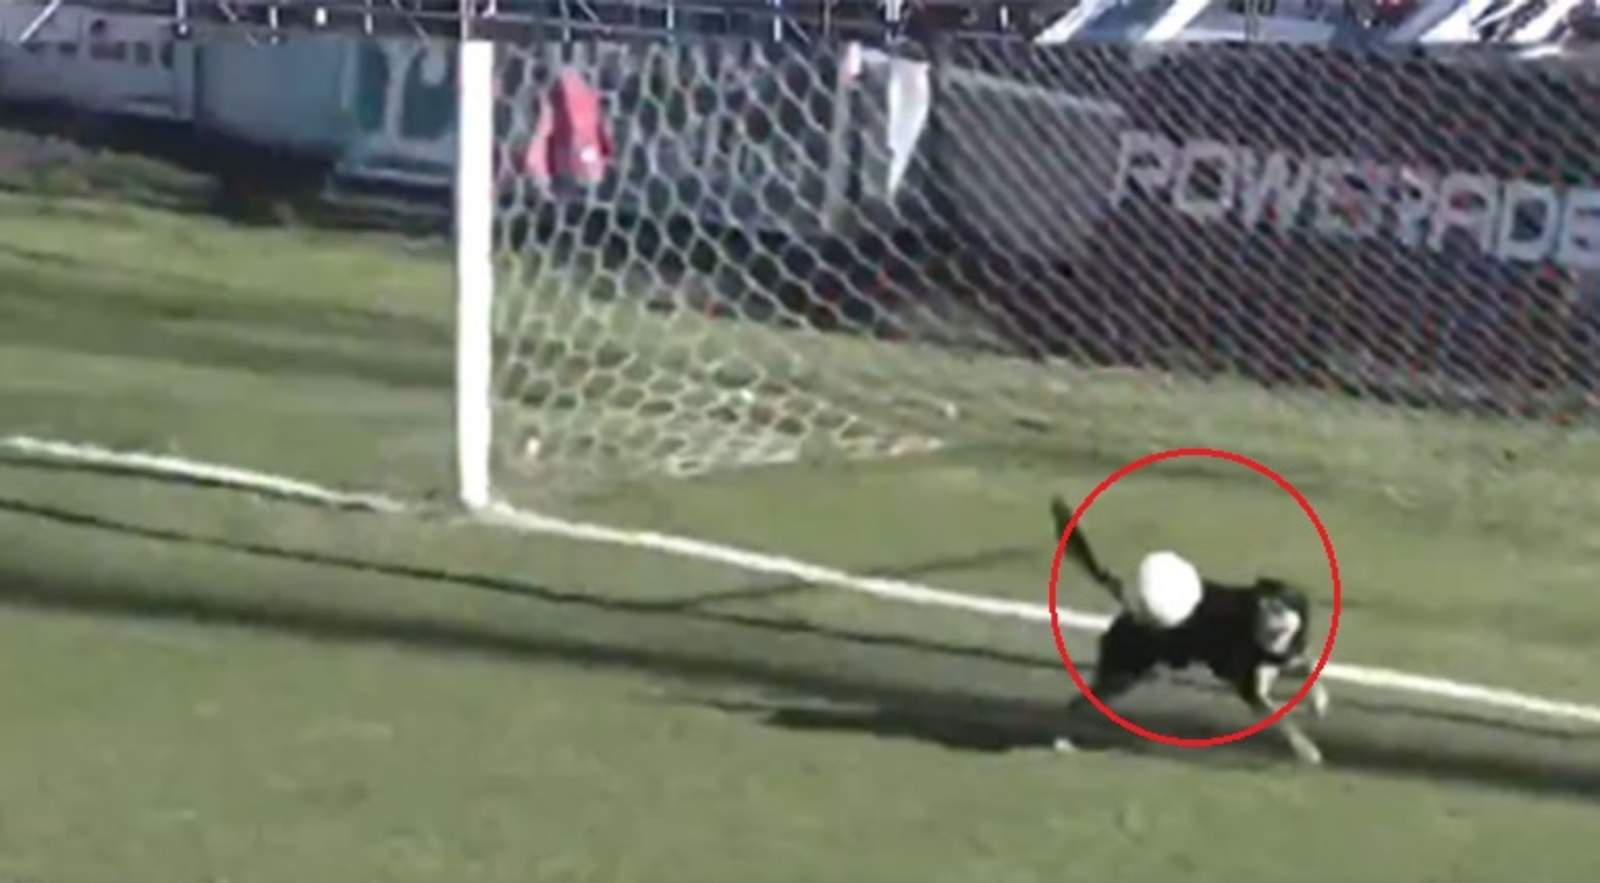 El can bloqueó con su cuerpo el balón evitando que entrara a la portería (INTERNET)  